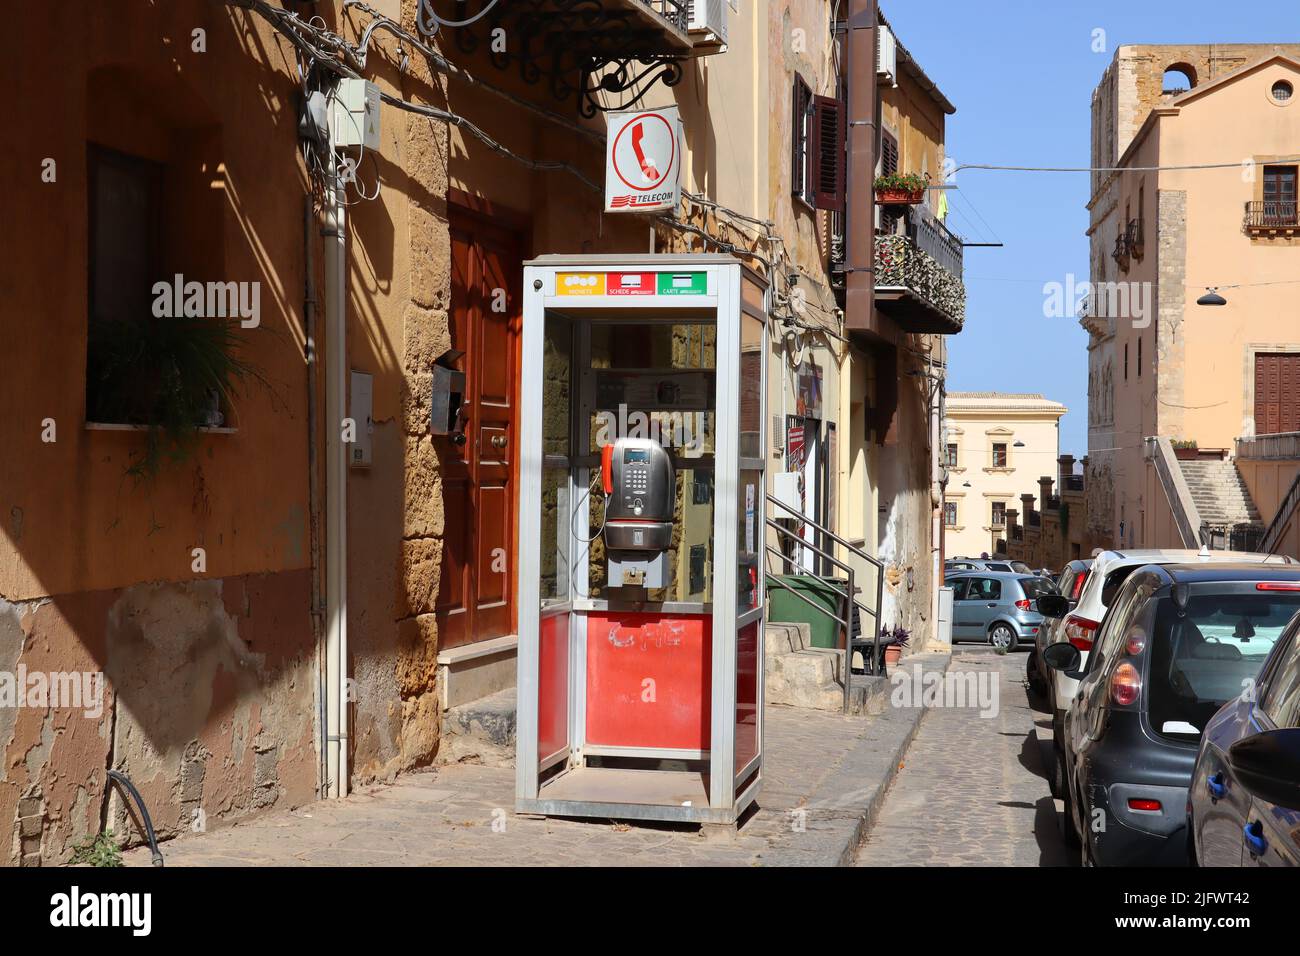 Public Telephone booth by Telecom Italia company Stock Photo